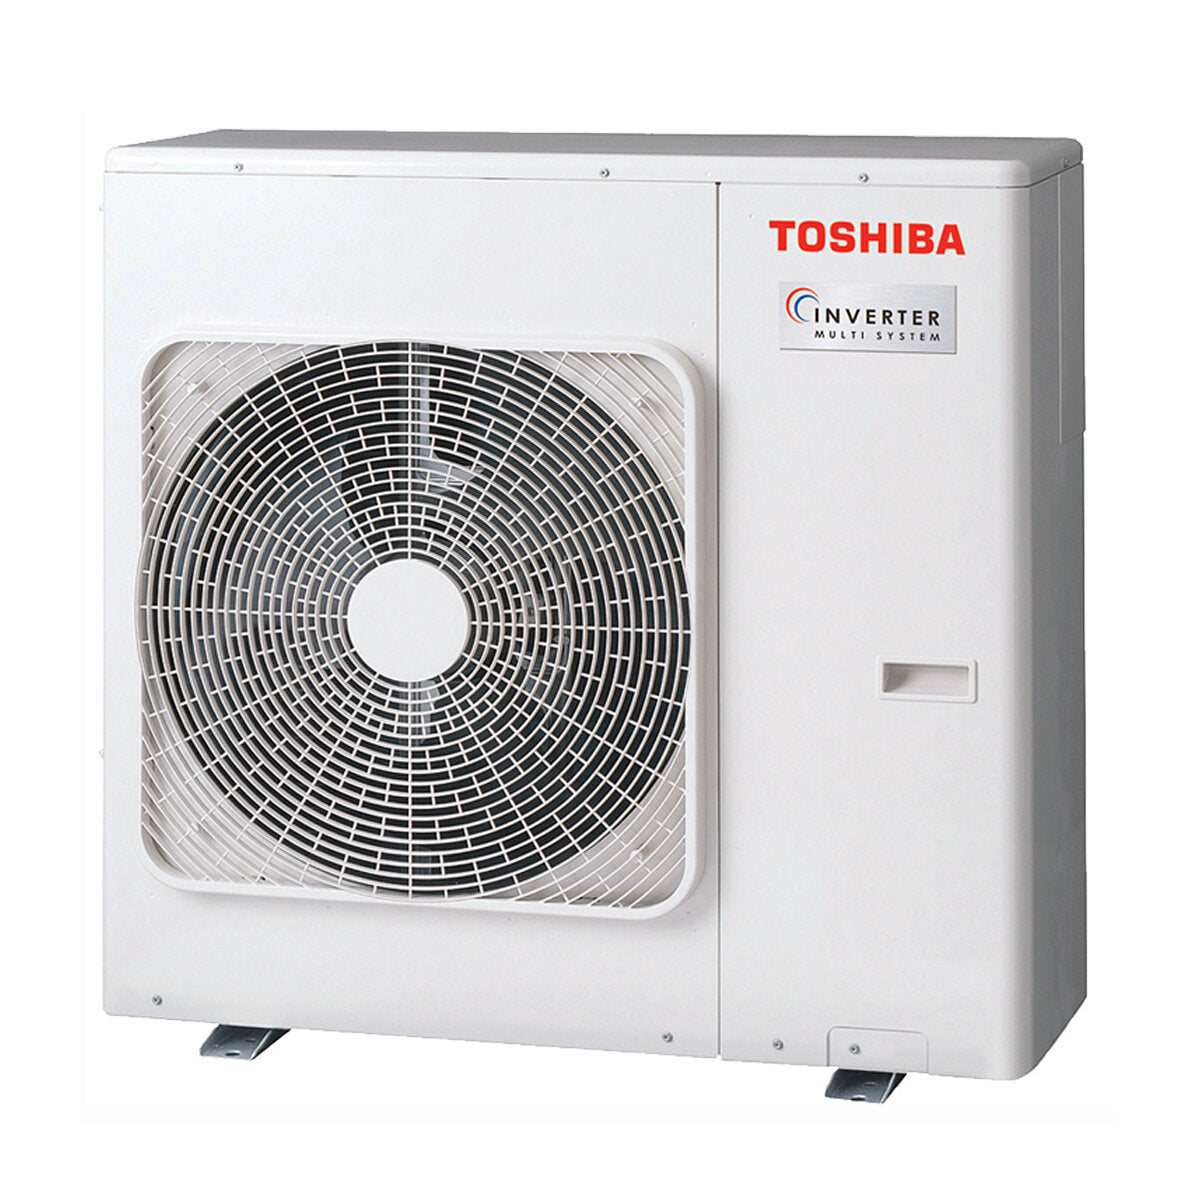 Toshiba Ductable Air Conditioner U2 penta split 7000 + 9000 + 9000 + 9000 + 22000 BTU inverter A++ unité extérieure 10,0 kW